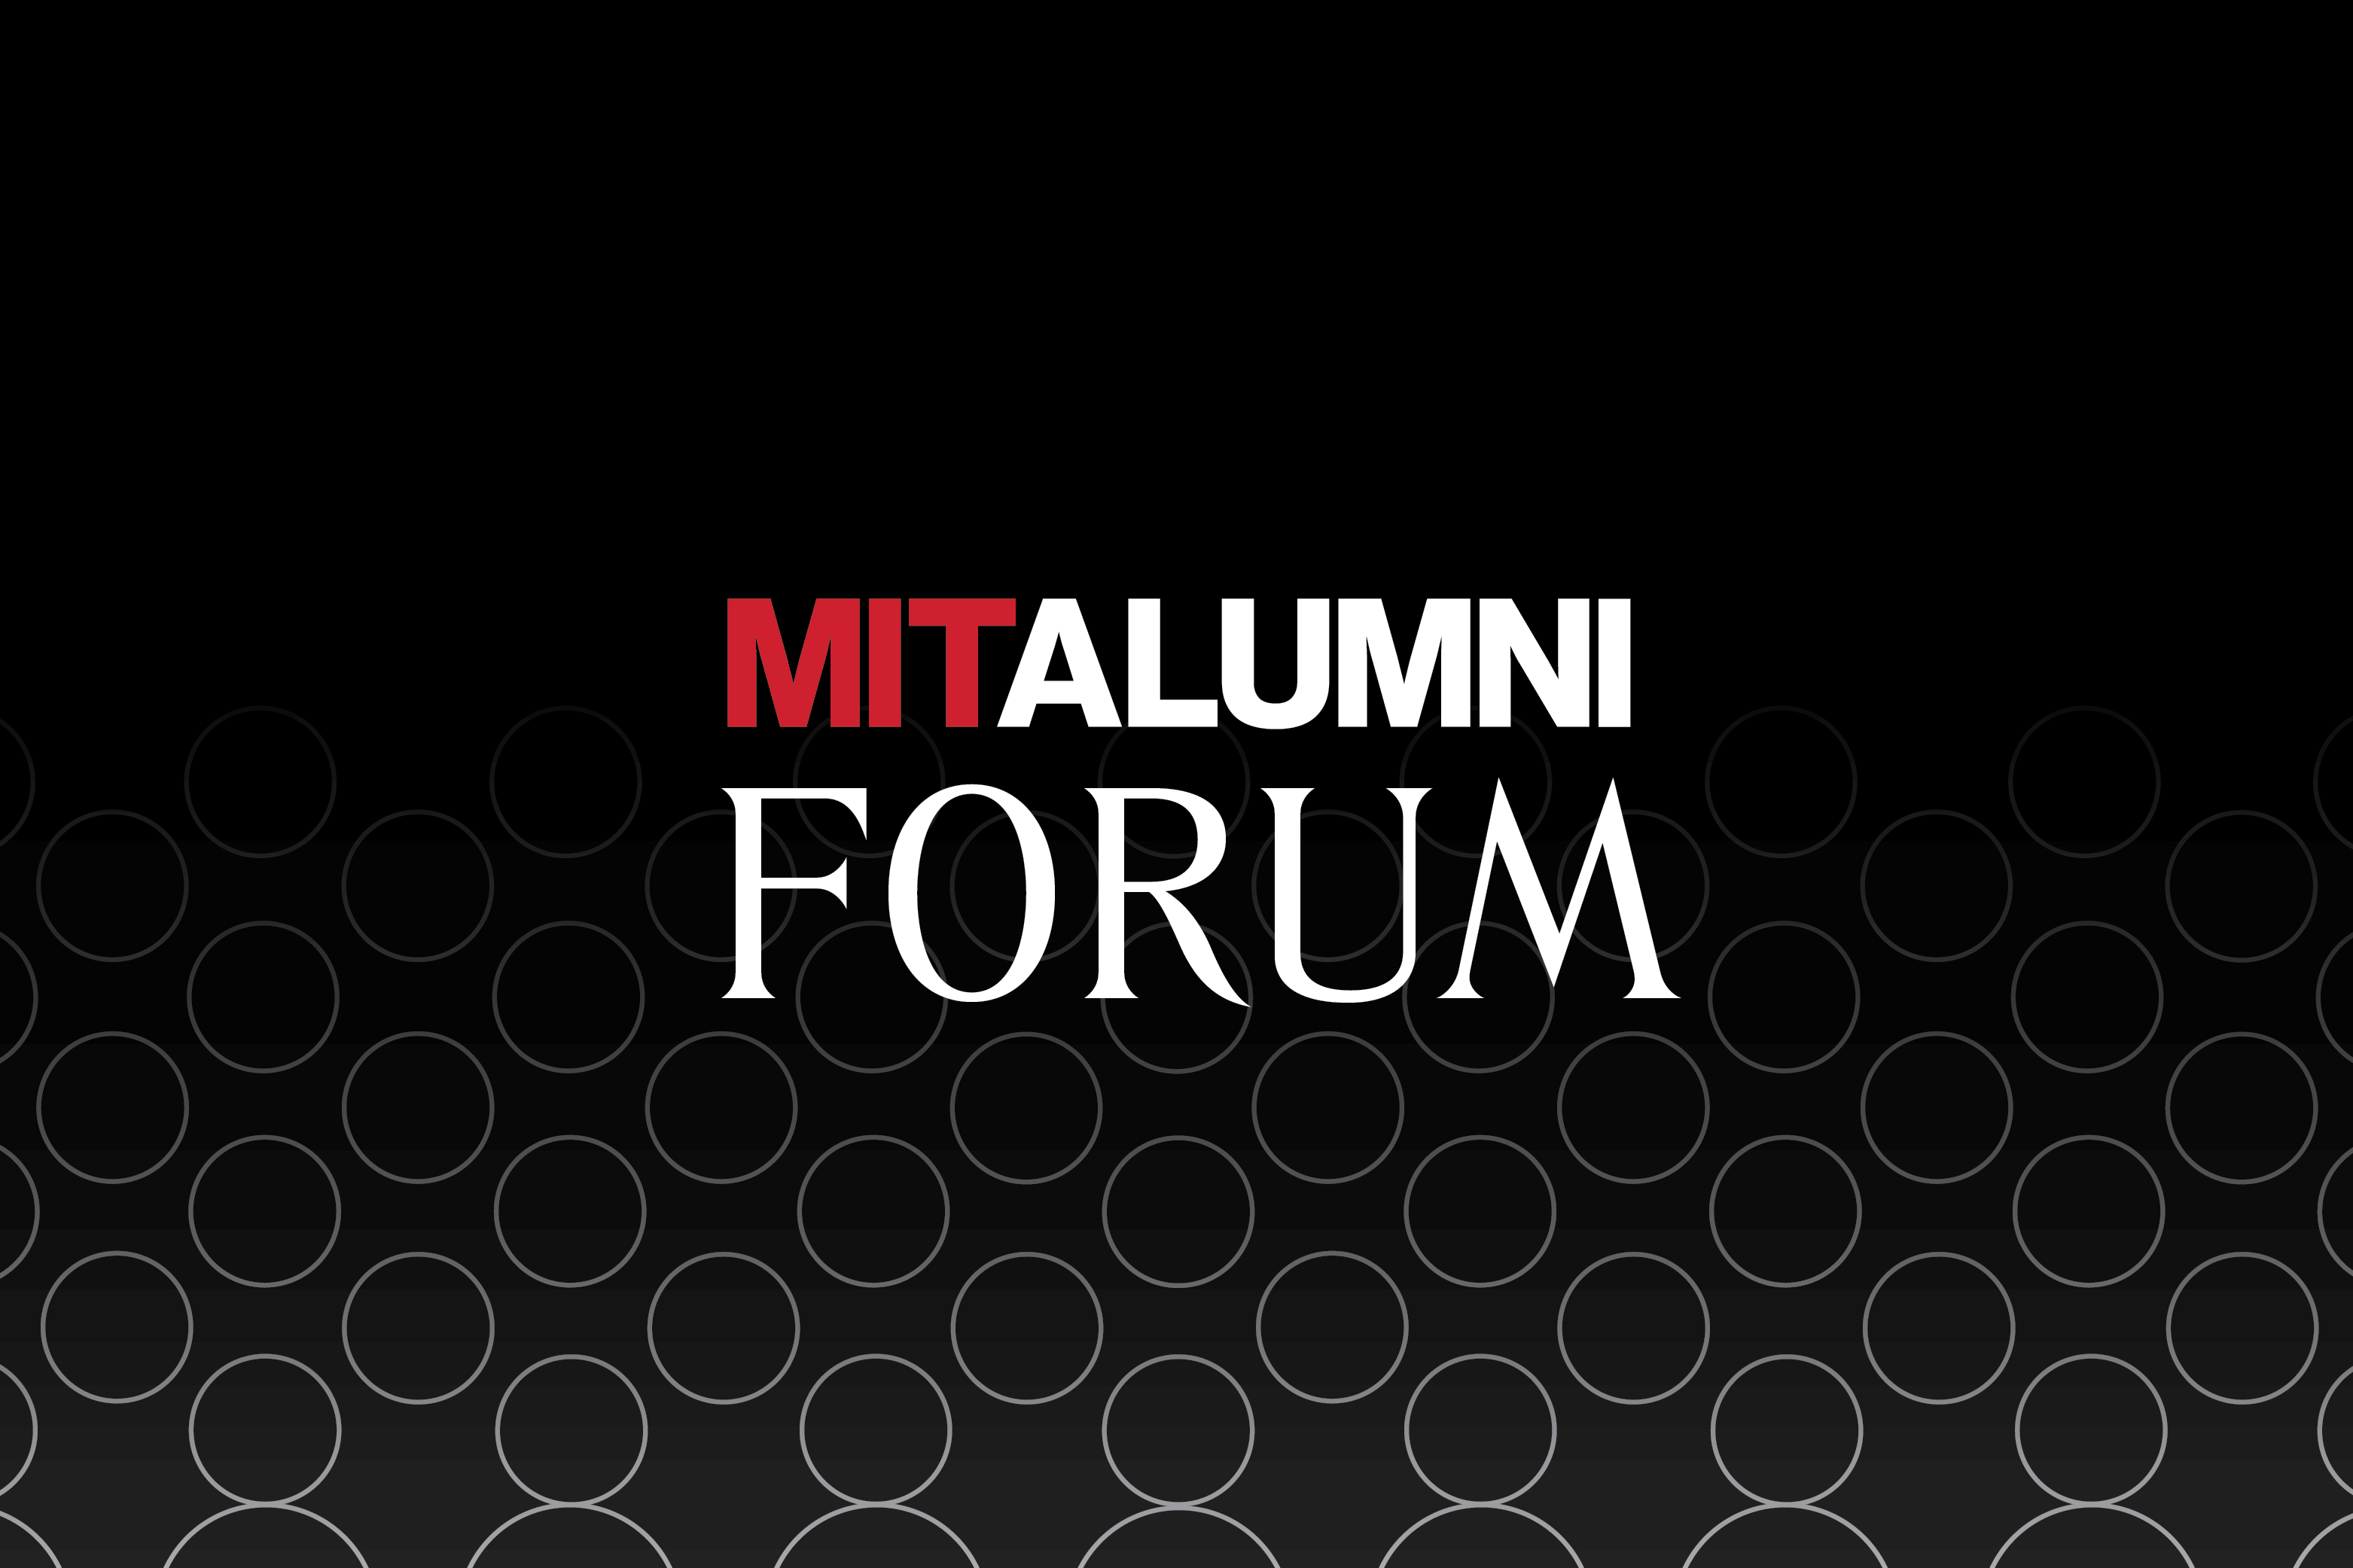 MIT alumni forum event graphic